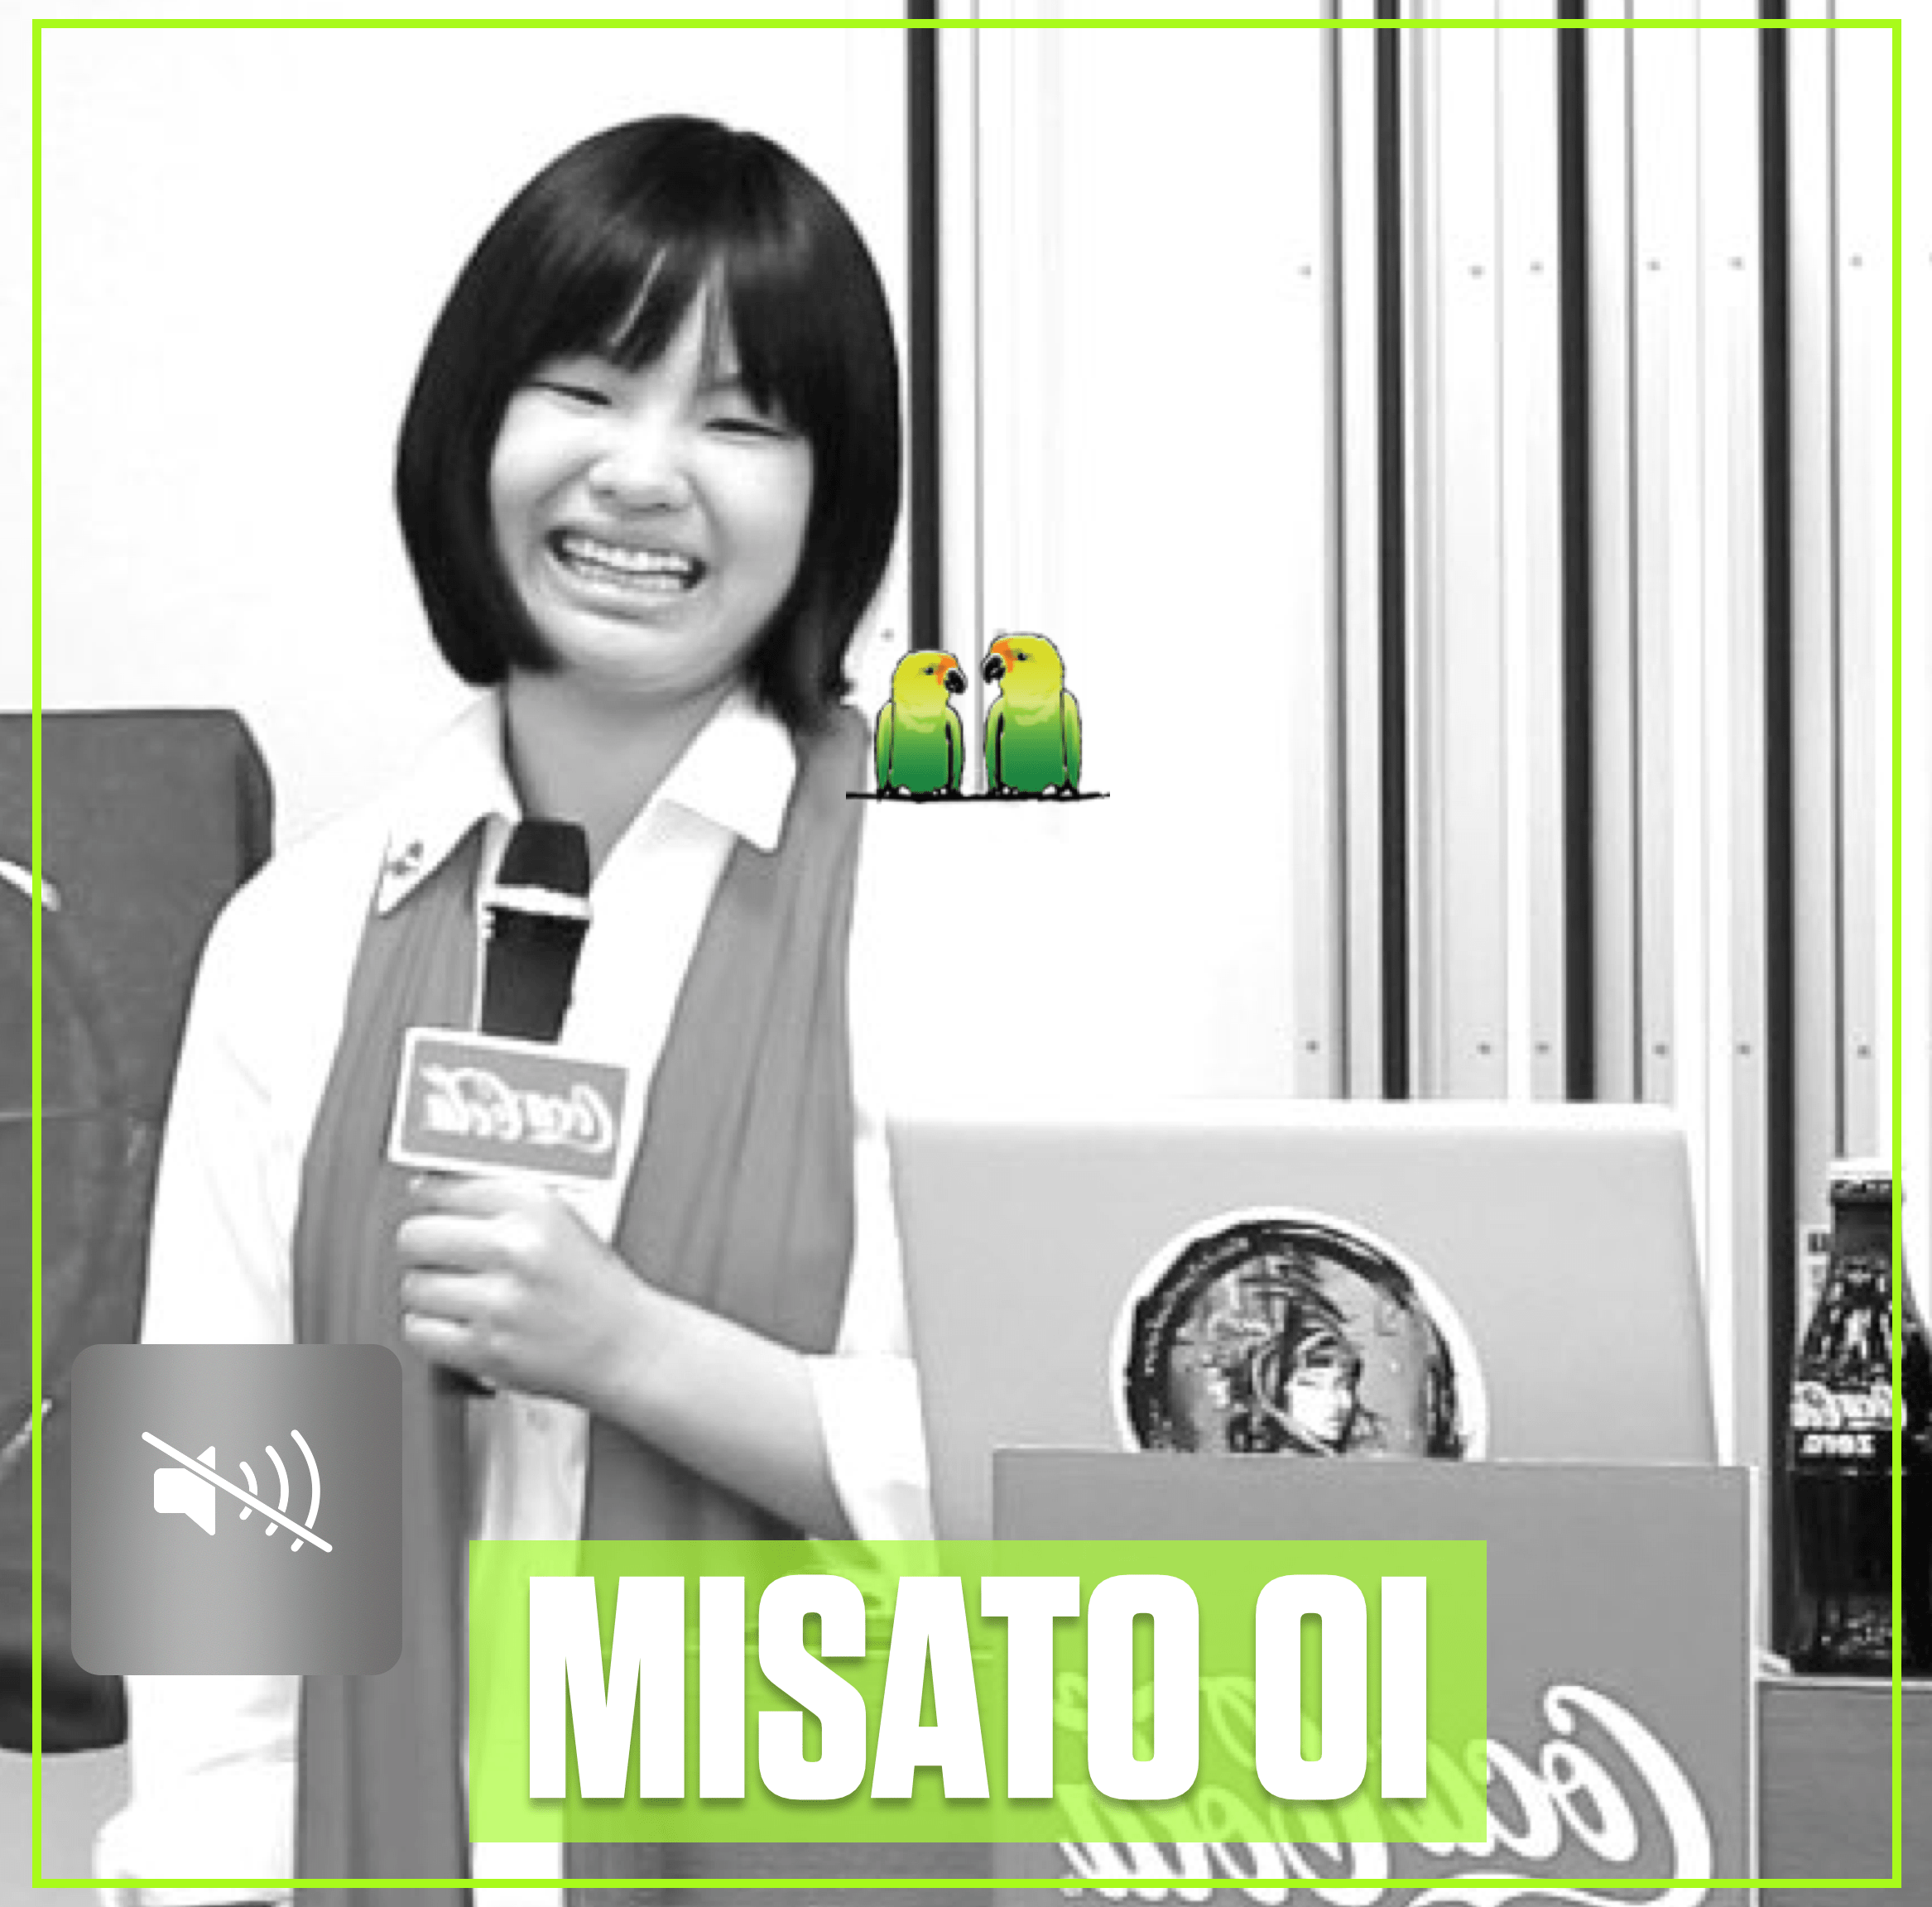 Misato Oi